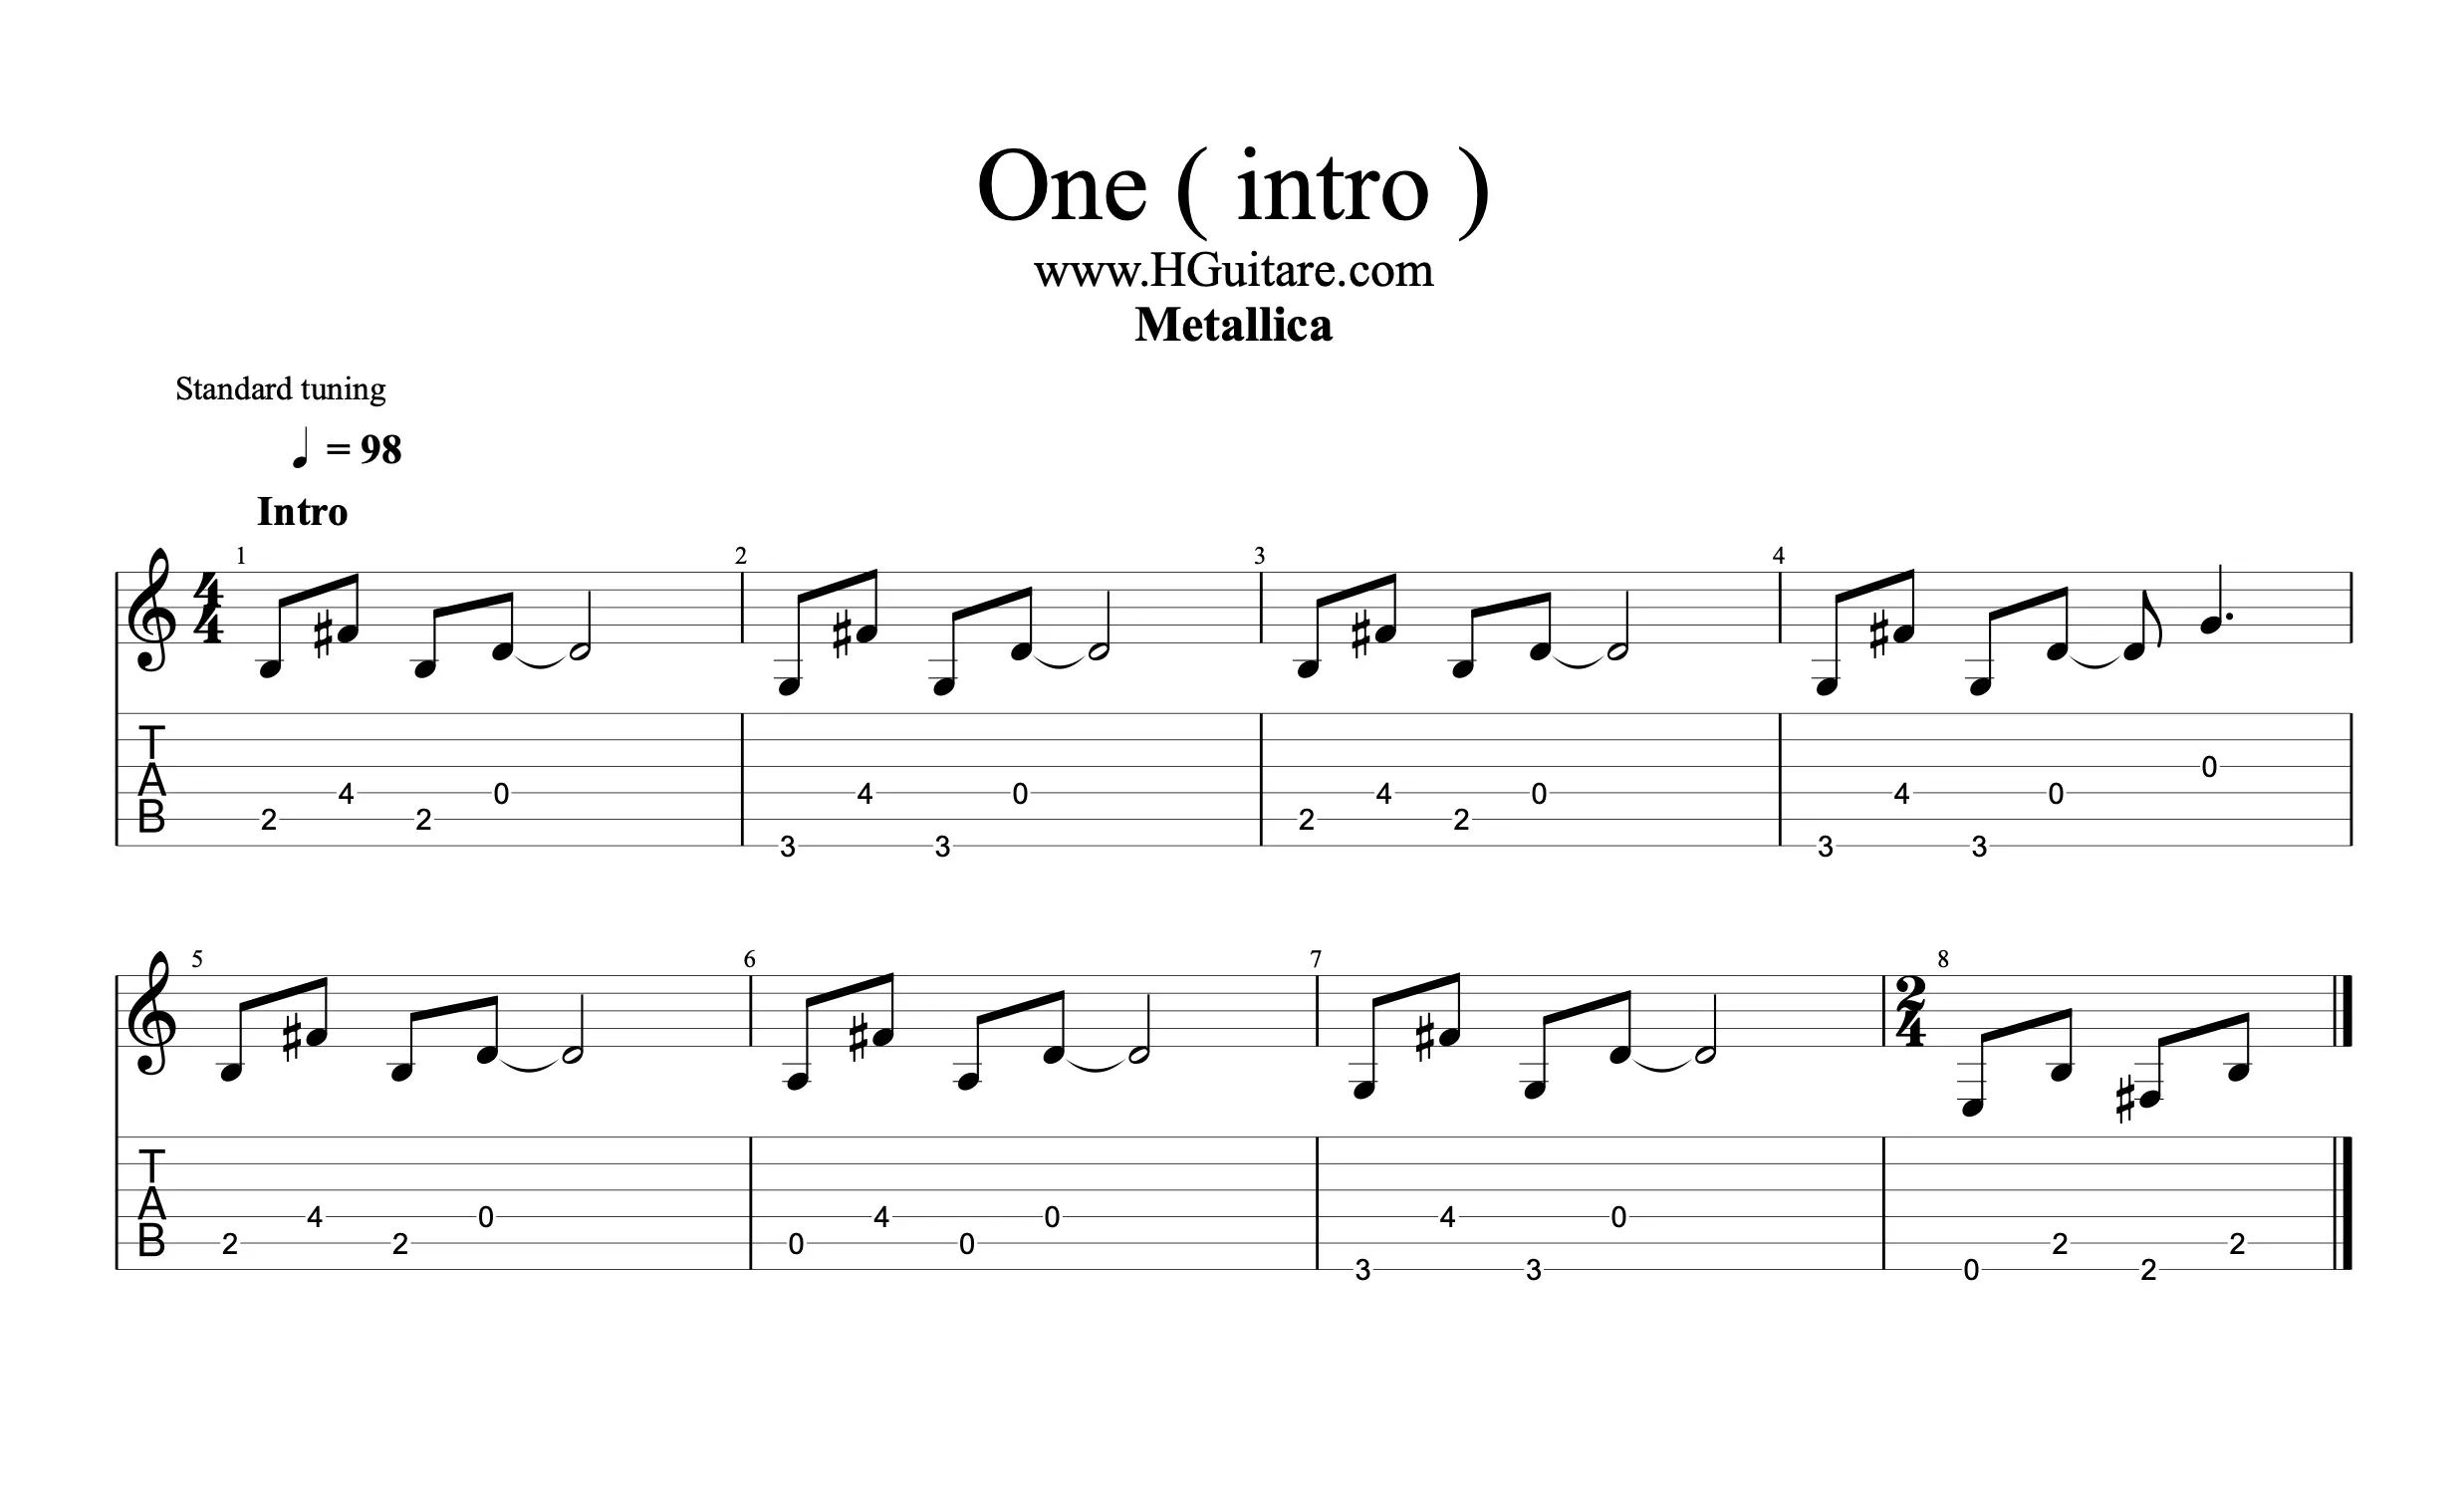 Partition et tablature de l'intro de One de Metallica